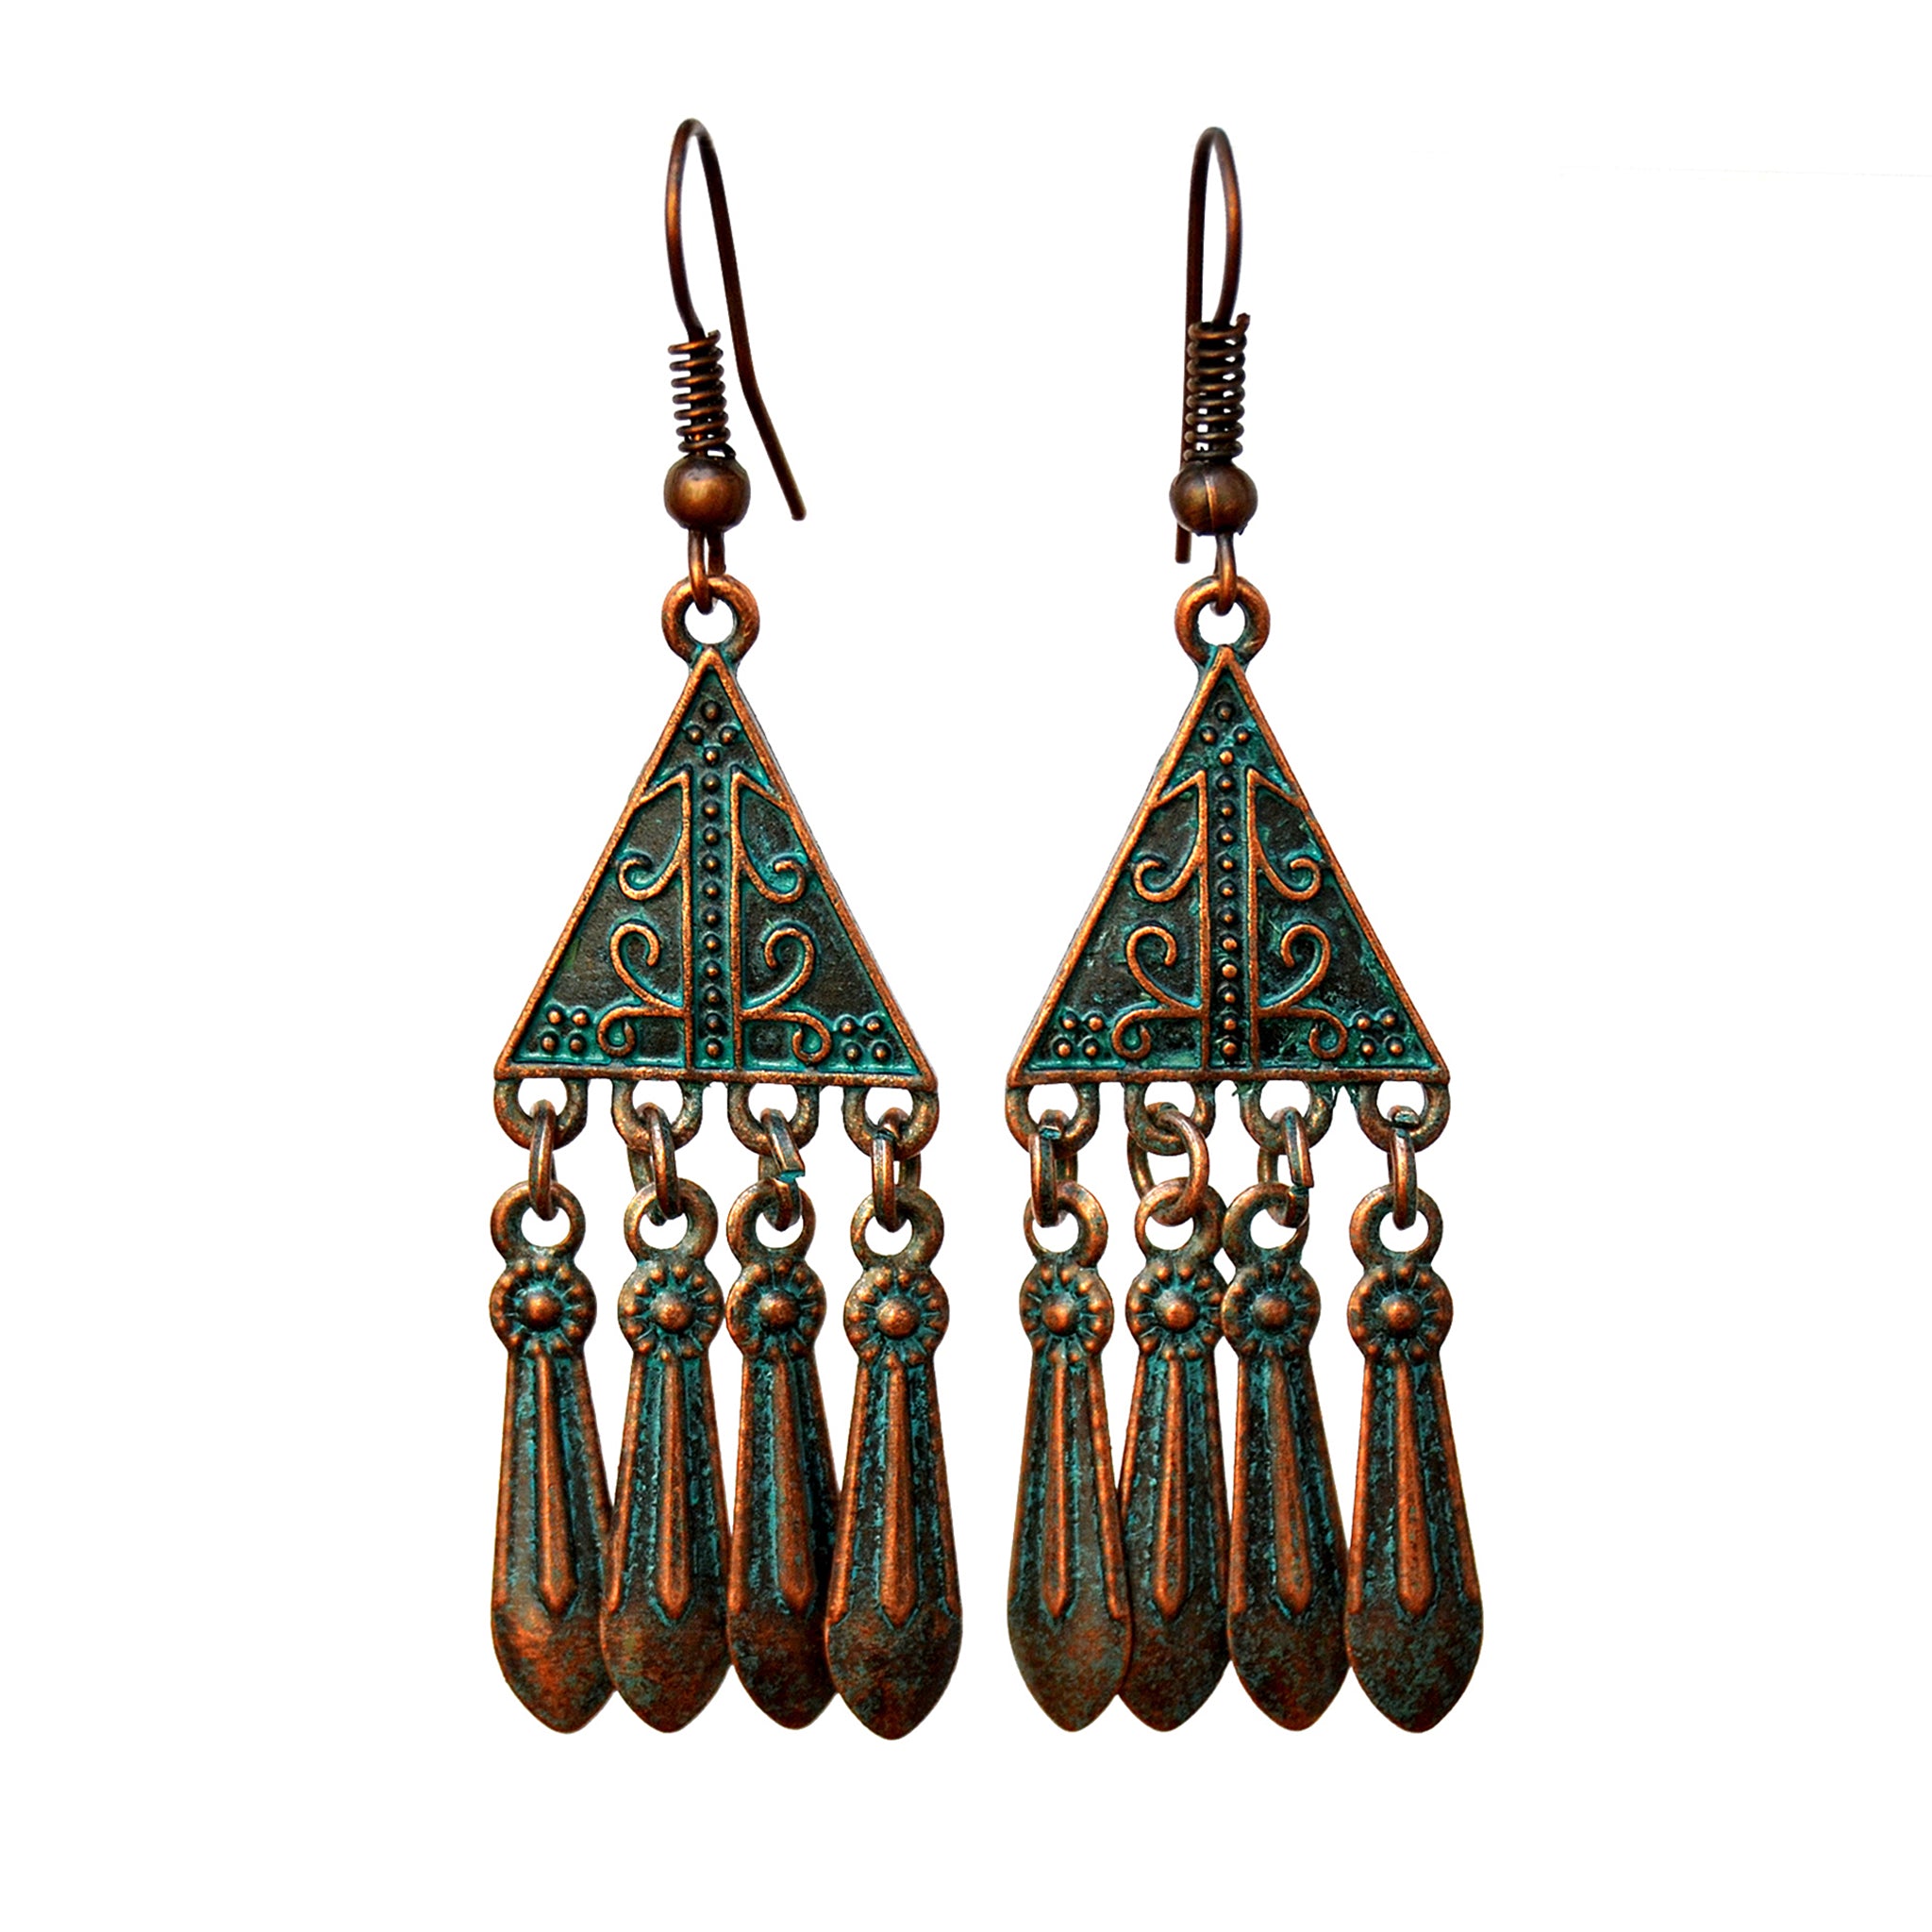 Gypsy triangle earrings